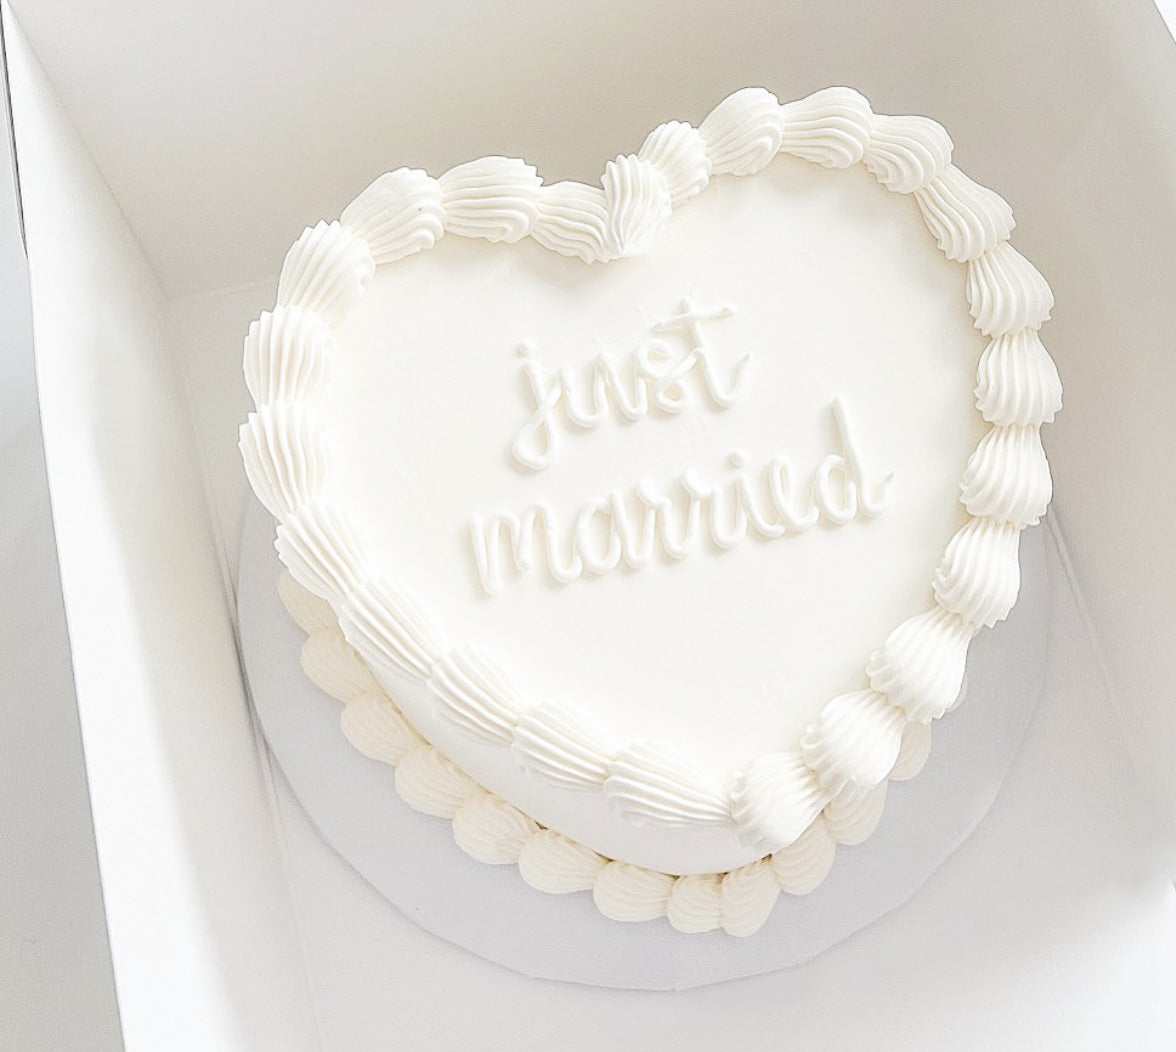 Just Married Vintage Cake